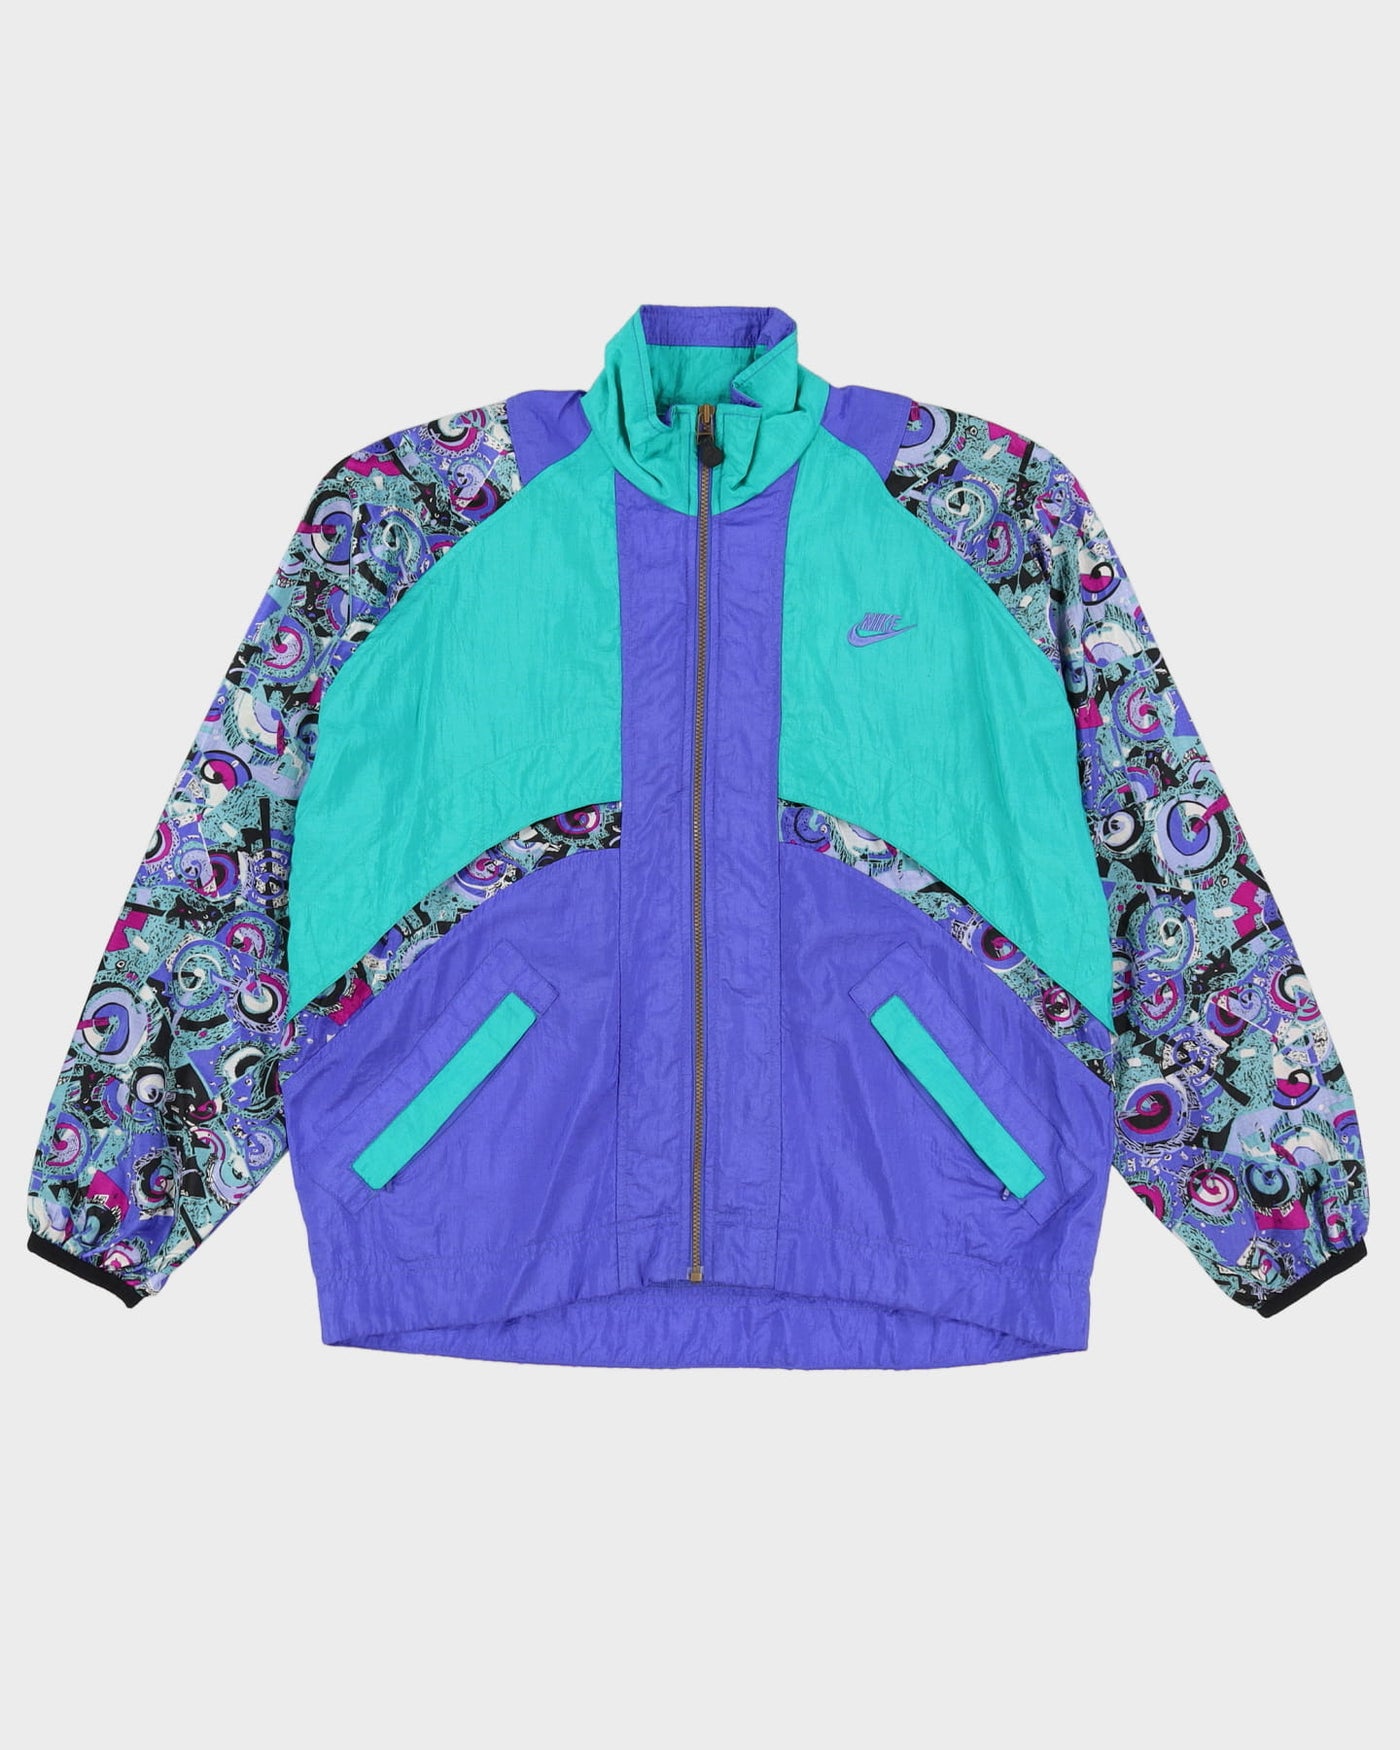 Vintage 90s Nike Patterned Purple / Green Oversized Windbreaker Shell Jacket - S